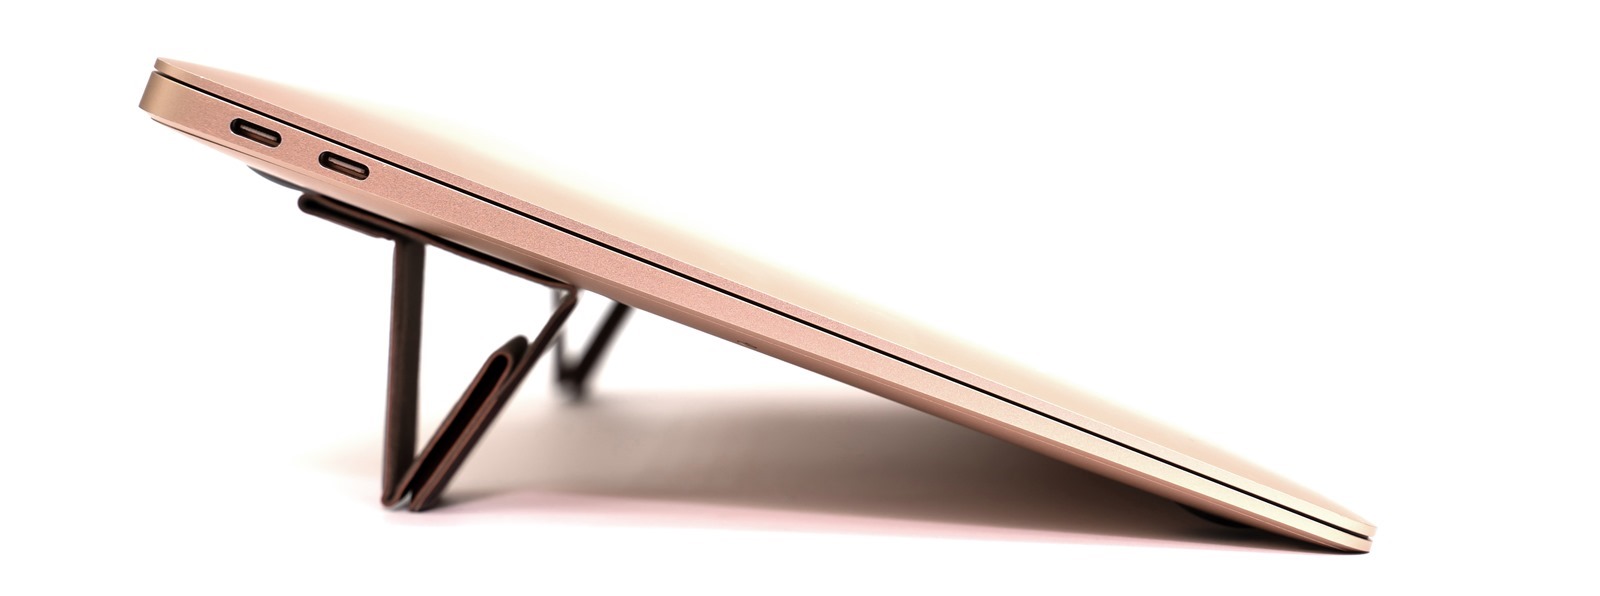 皮革質感、0.4cm 的超薄輕巧，優雅自由，地表最小最美 Bestmade NEO 皮革筆電架來了！ @3C 達人廖阿輝